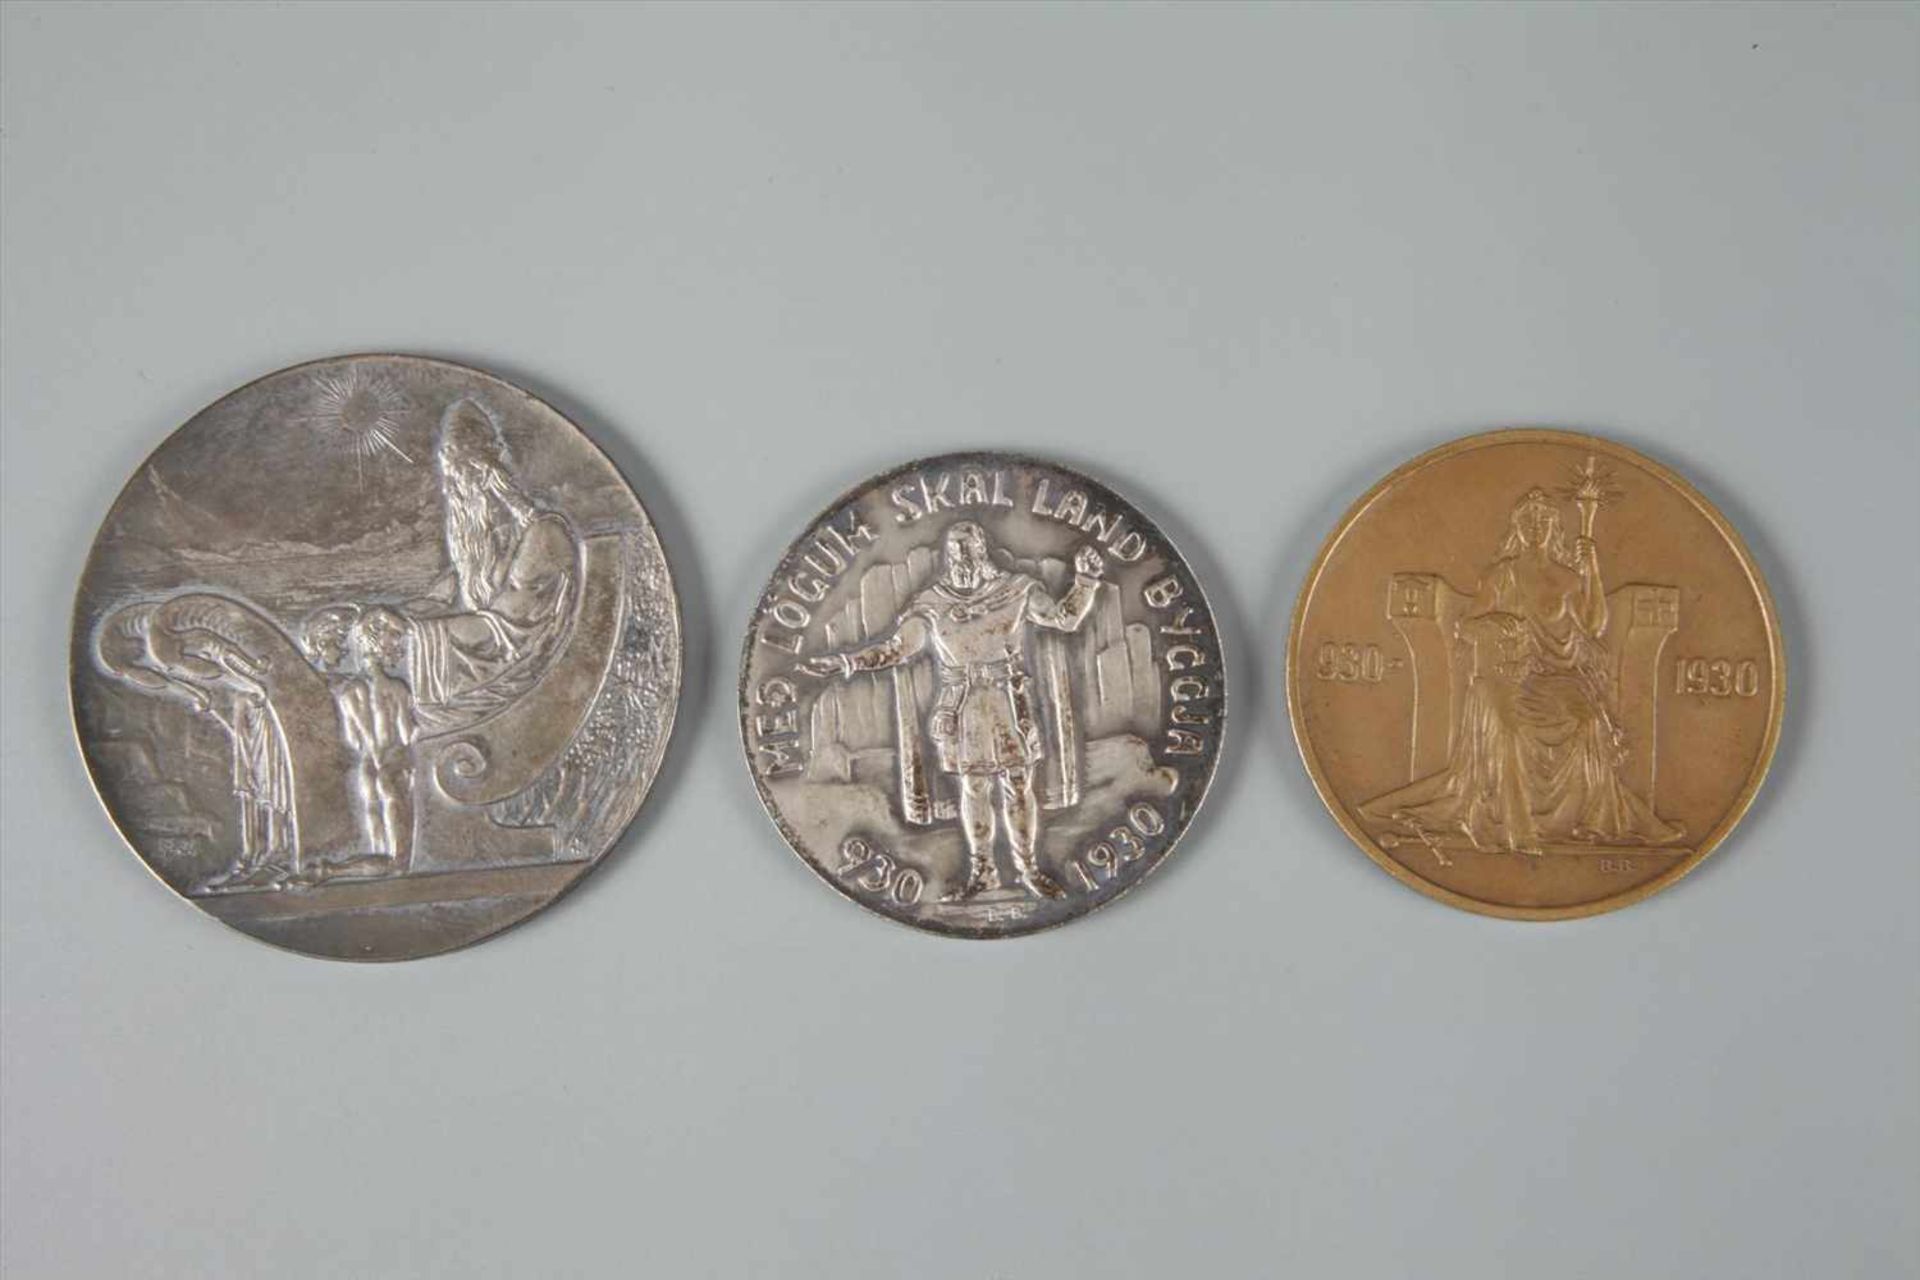 Drei Münzen Island im Etui Tausendjahrfeier Alting 1930, 2, 5 und 10 Kronen, vz, Etui hat sich - Bild 3 aus 3